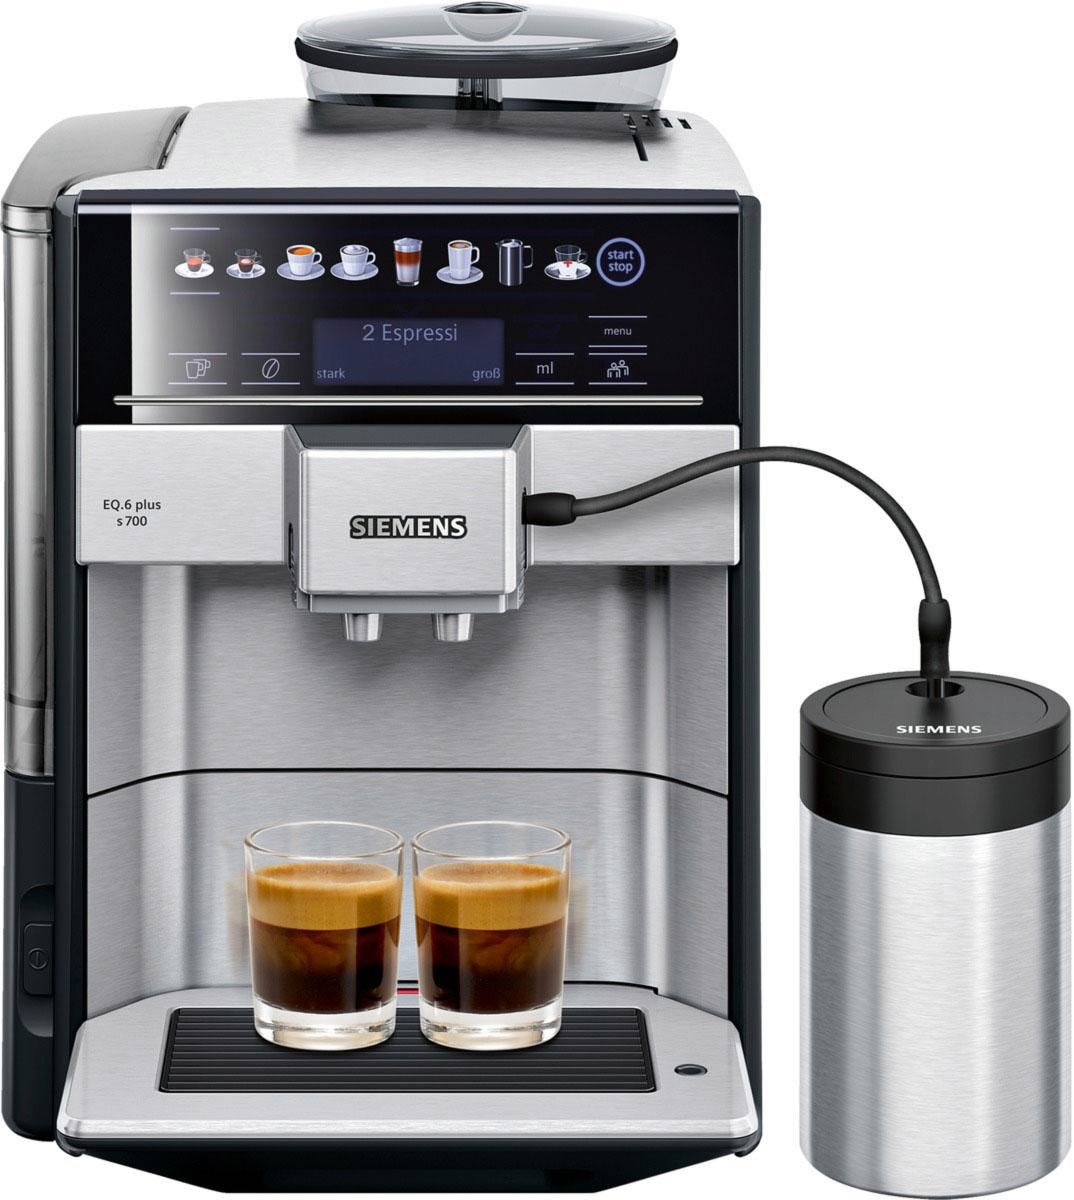 SIEMENS Kaffeevollautomat EQ.6 plus TE657M03DE, auf s700 bestellen 1,7l Scheibenmahlwerk Rechnung Tank